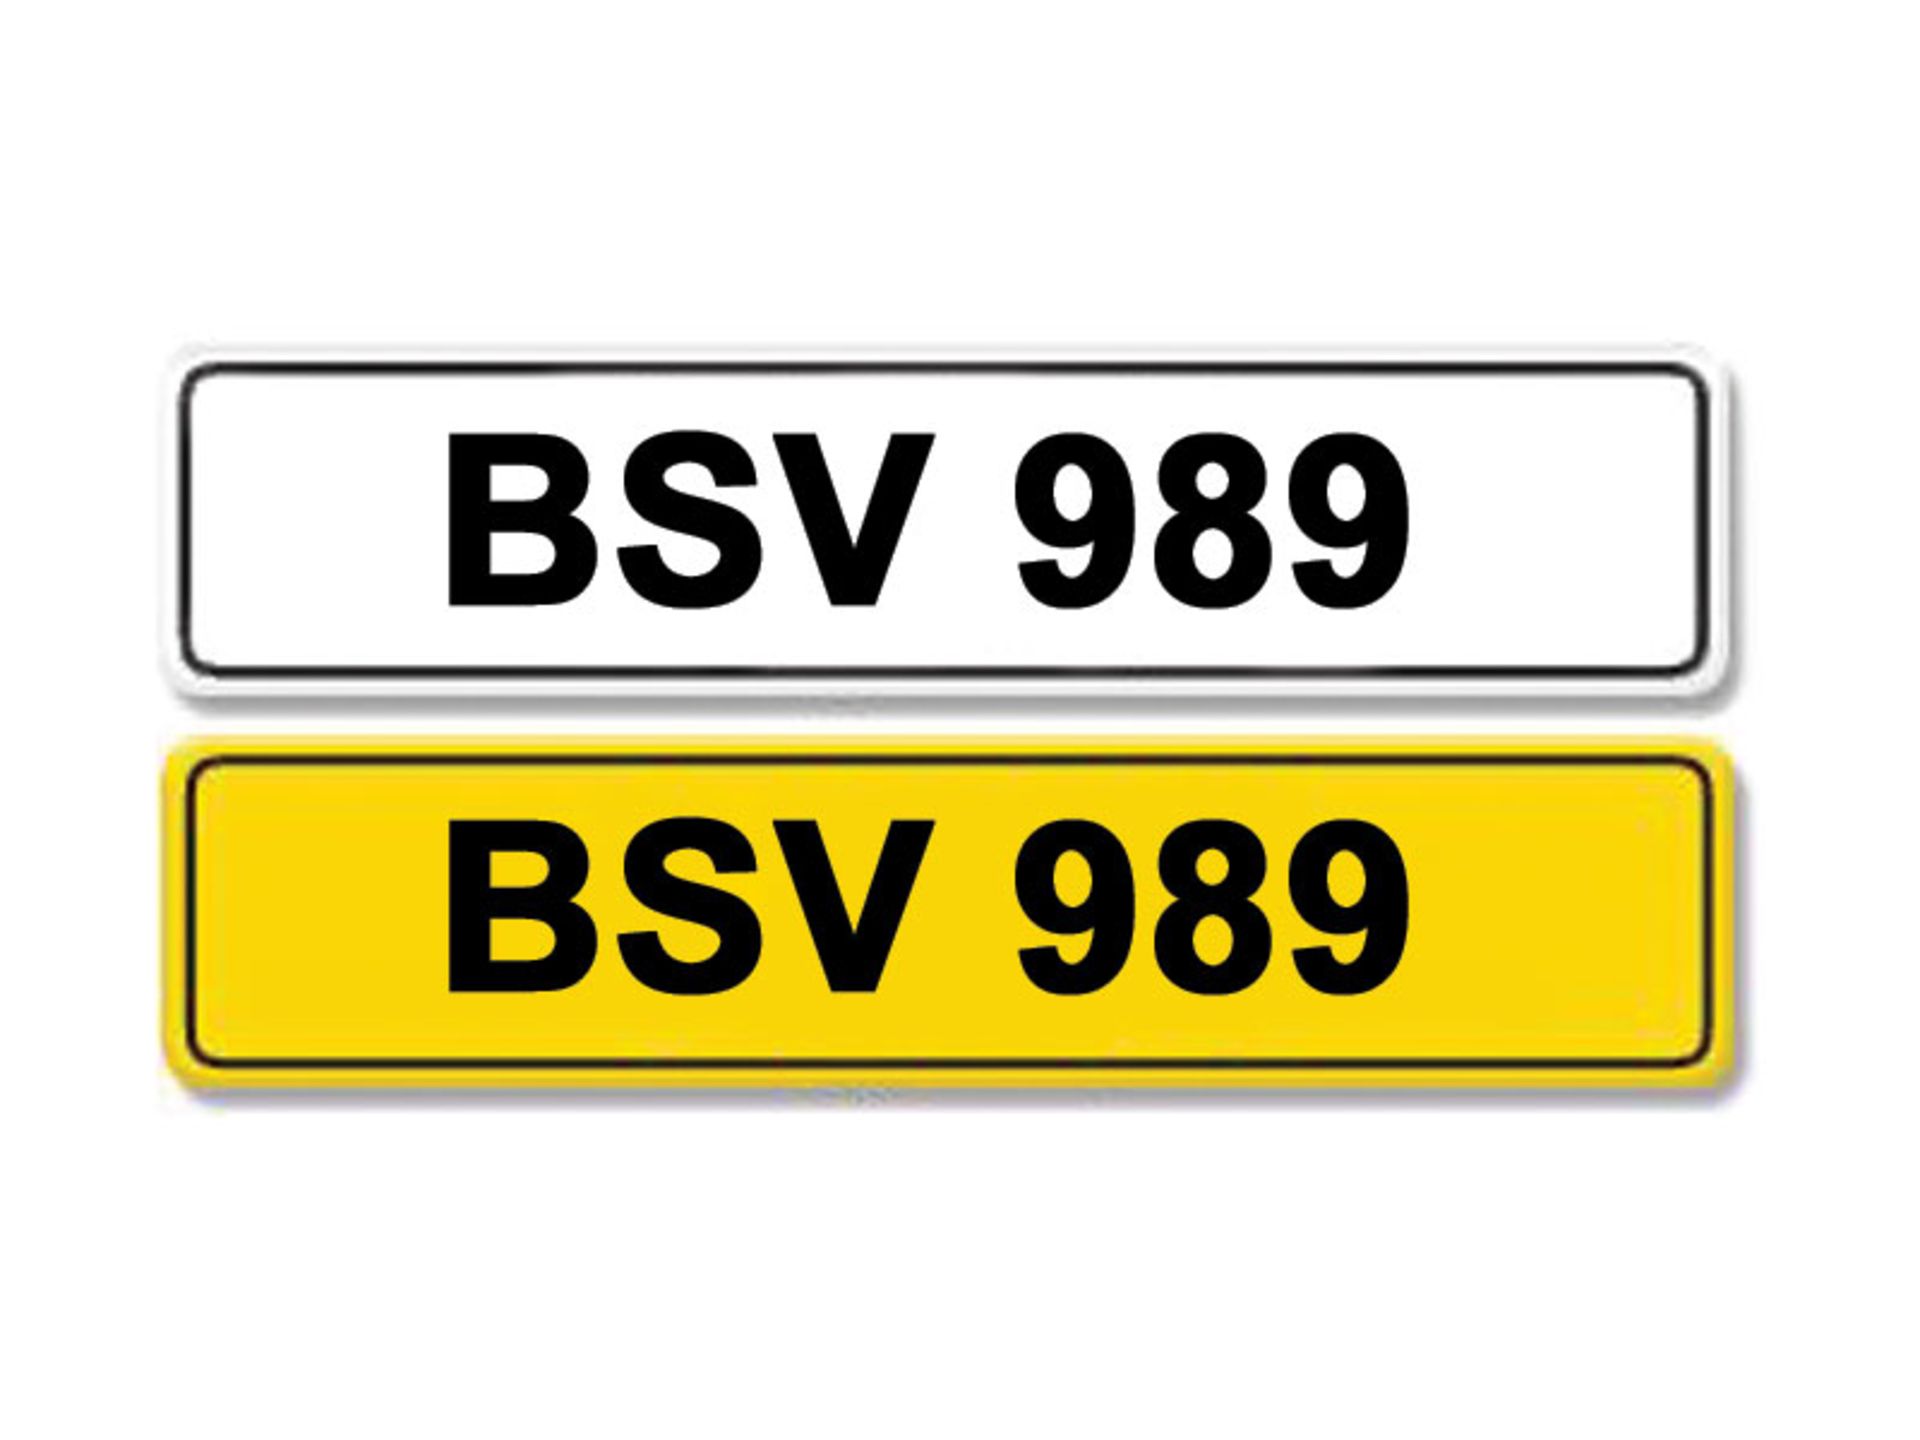 Registration Number BSV 989